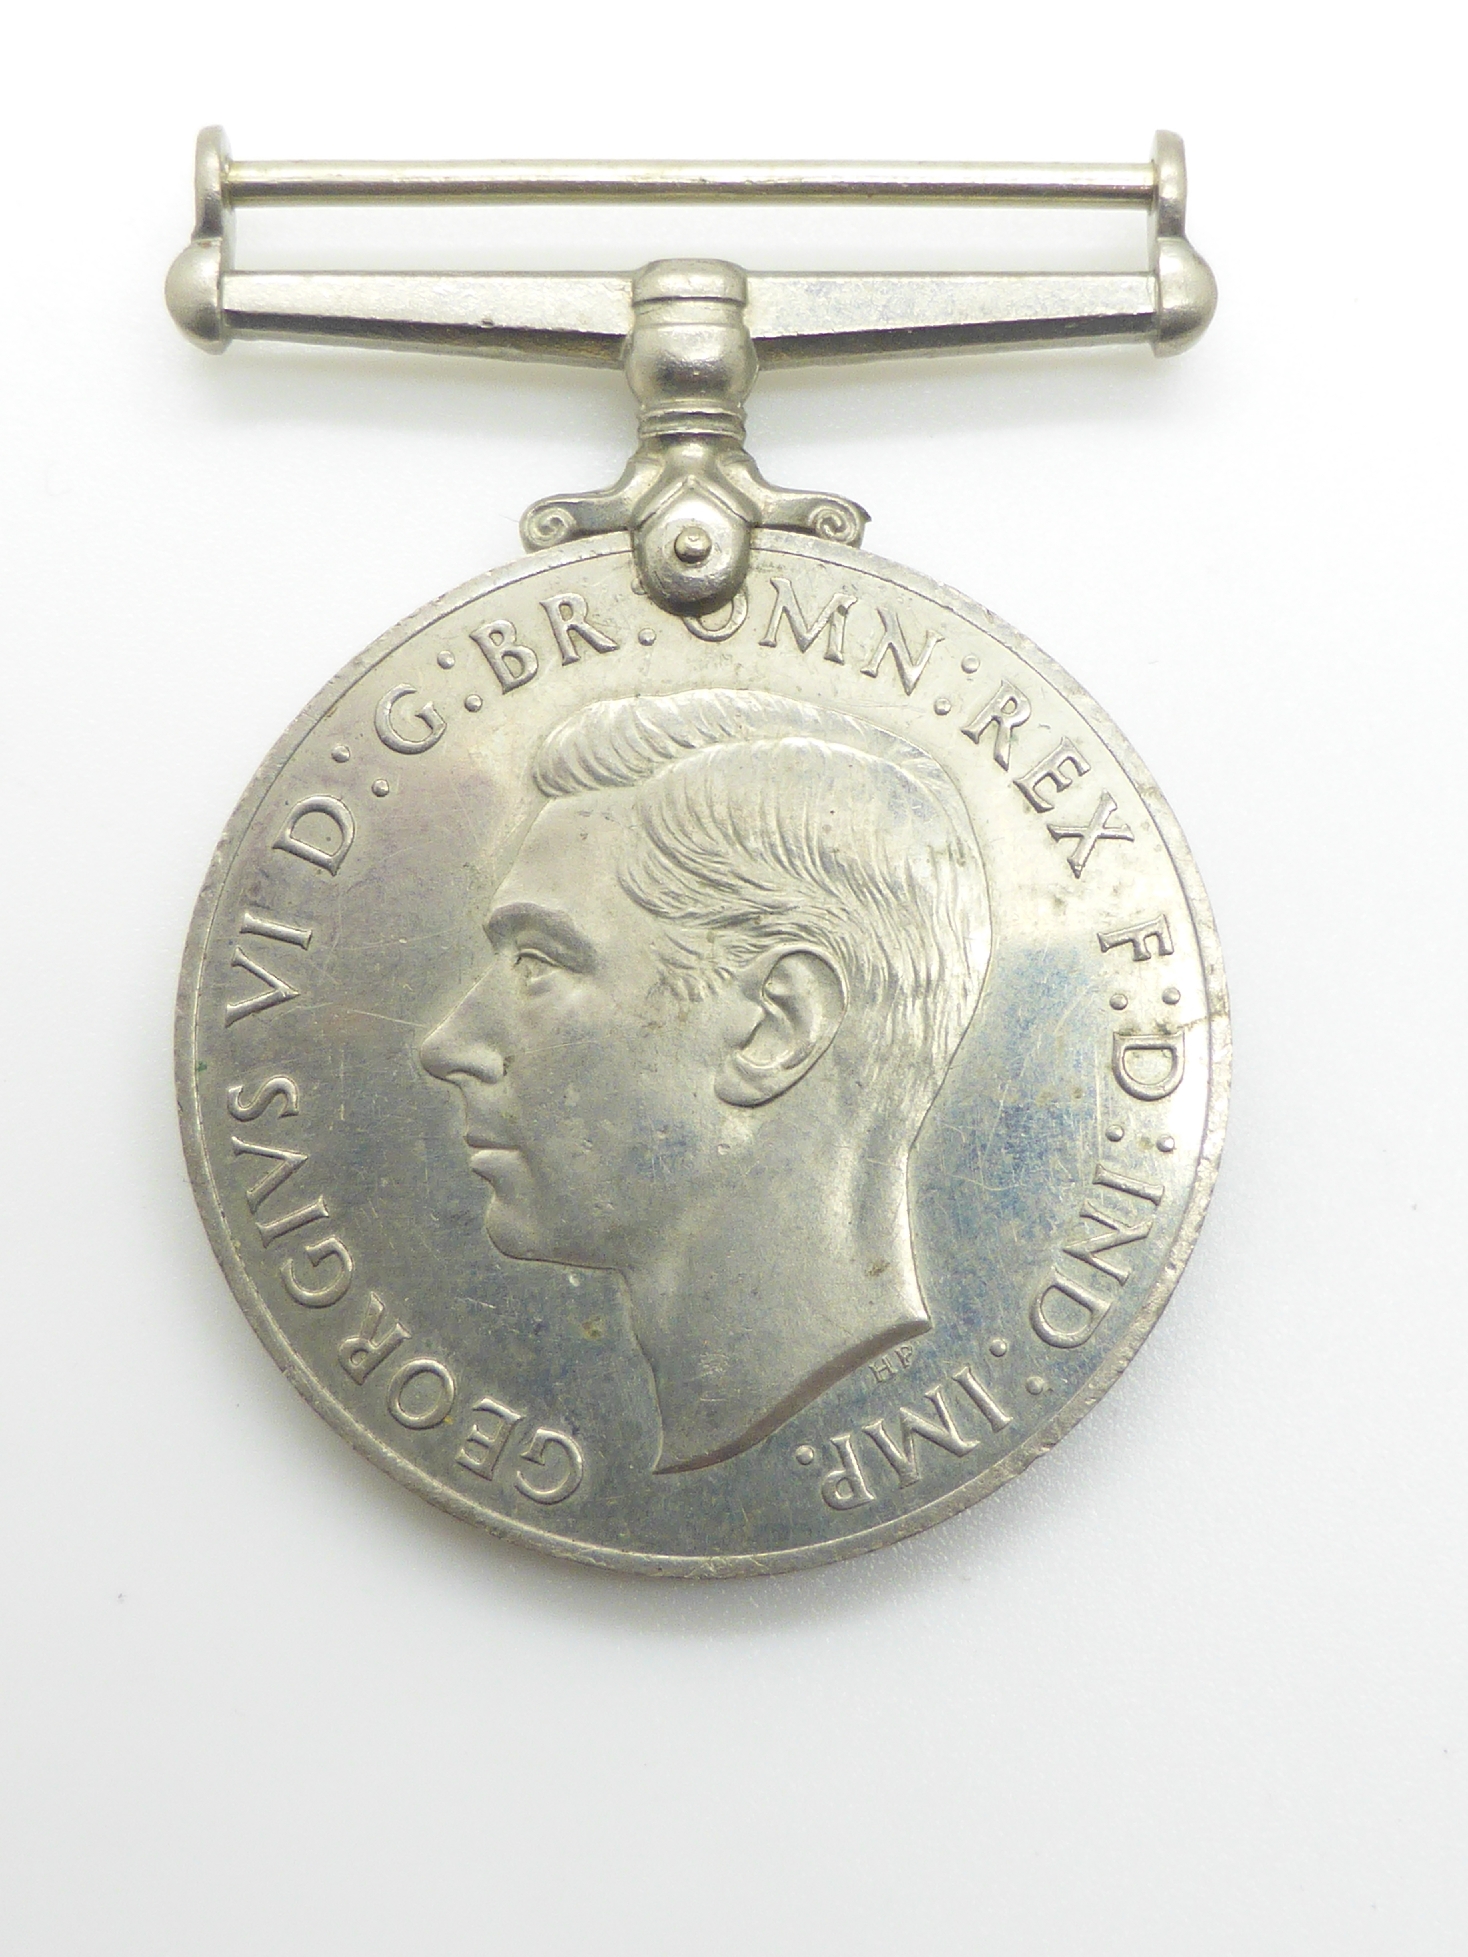 Elizabeth II Imperial Service Medal named to Mrs Jean Margaret Rose together with a WWII War Medal - Image 21 of 47